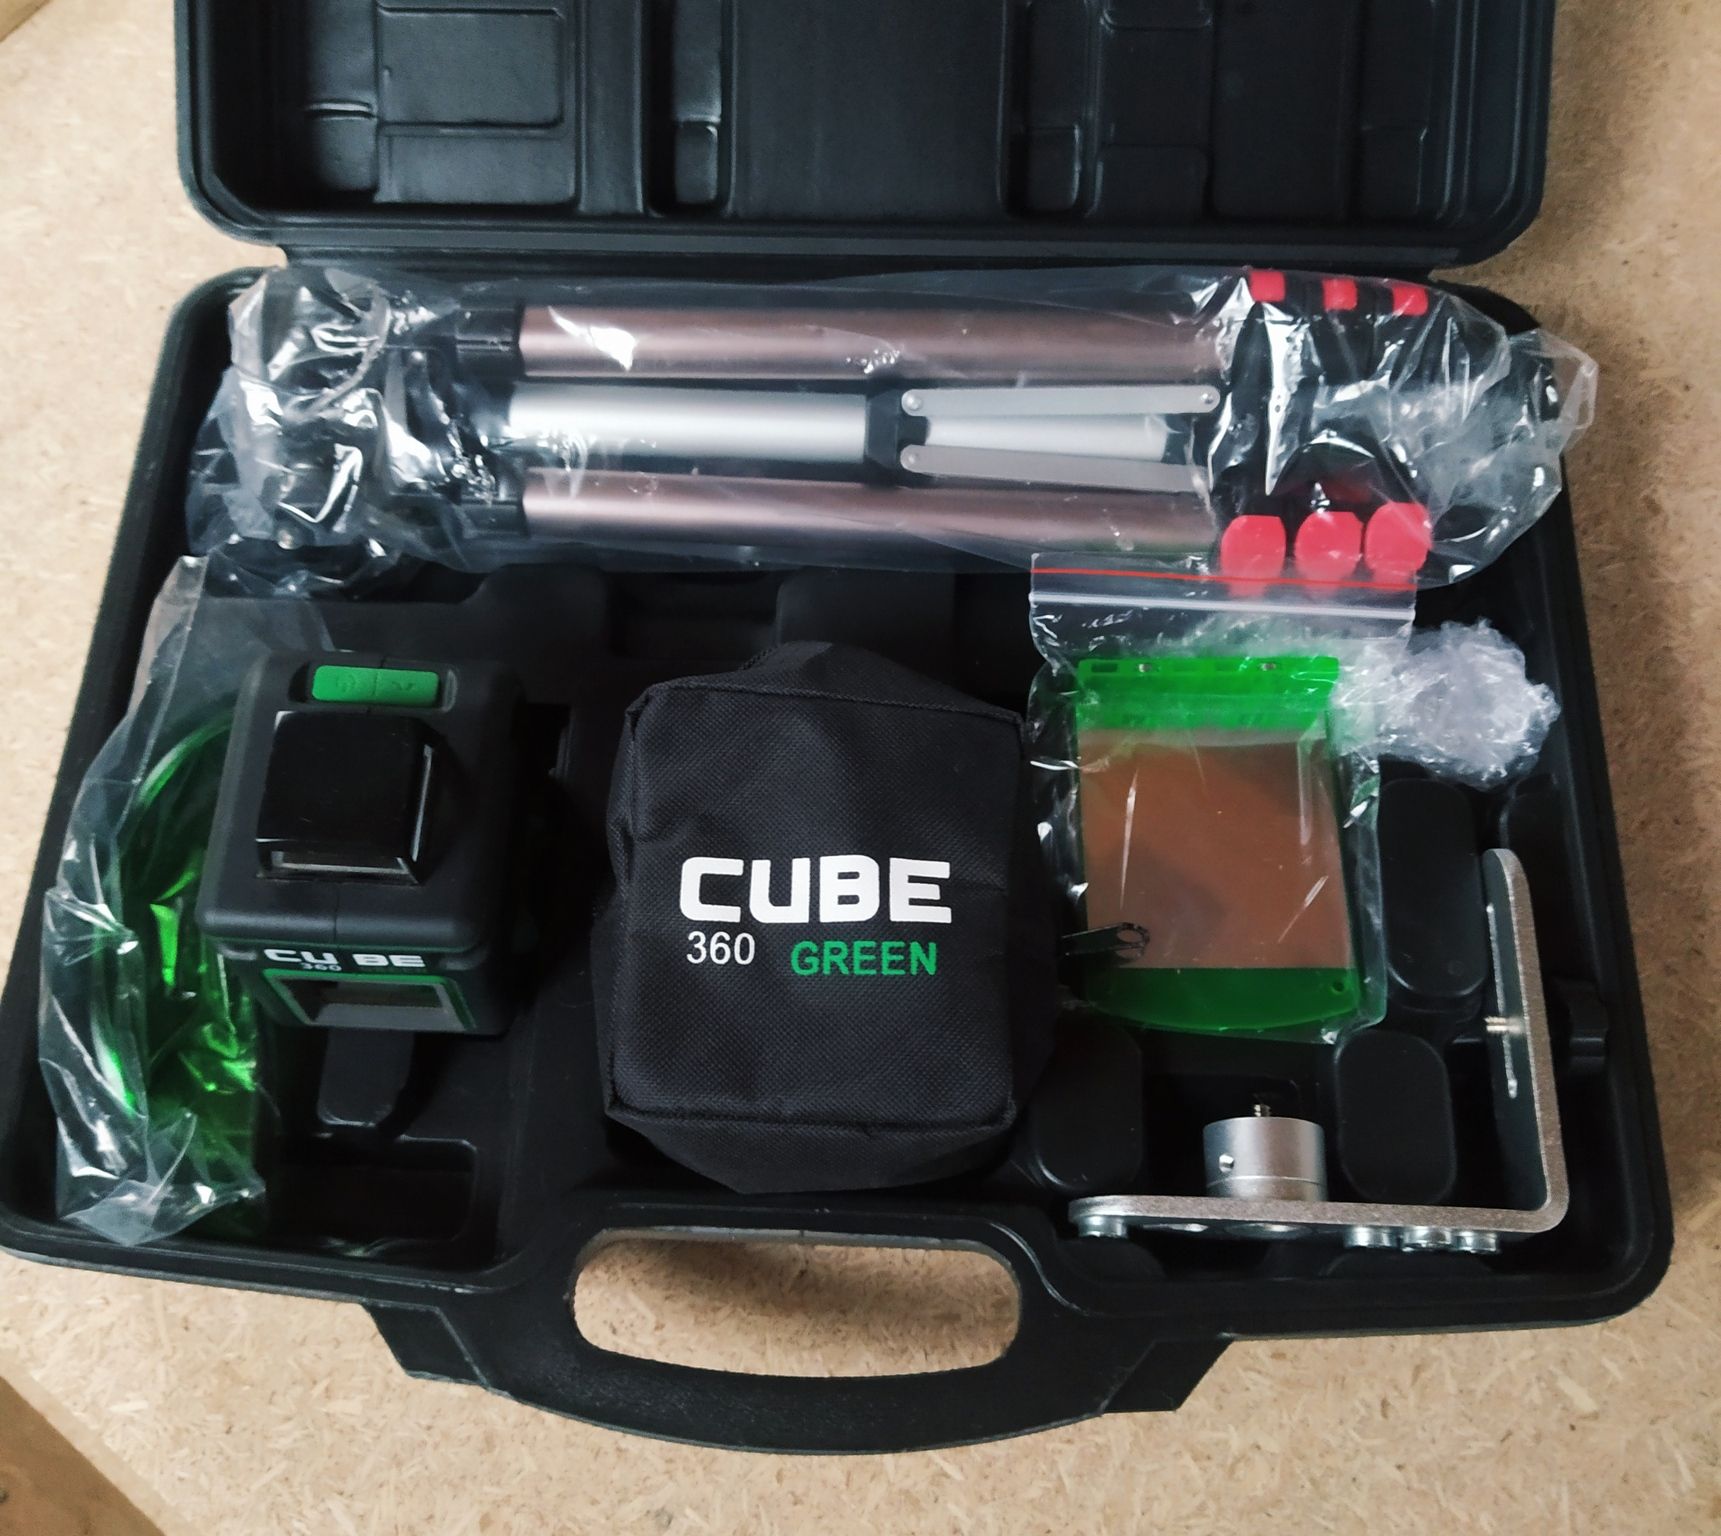 Лазерный уровень cube 360 green. Ada Cube 2-360 Green. Ada Cube 360 Ultimate Edition. Лазерный нивелир ada Cube 3-360. Лазерный уровень ada Cube 4 360 Green.